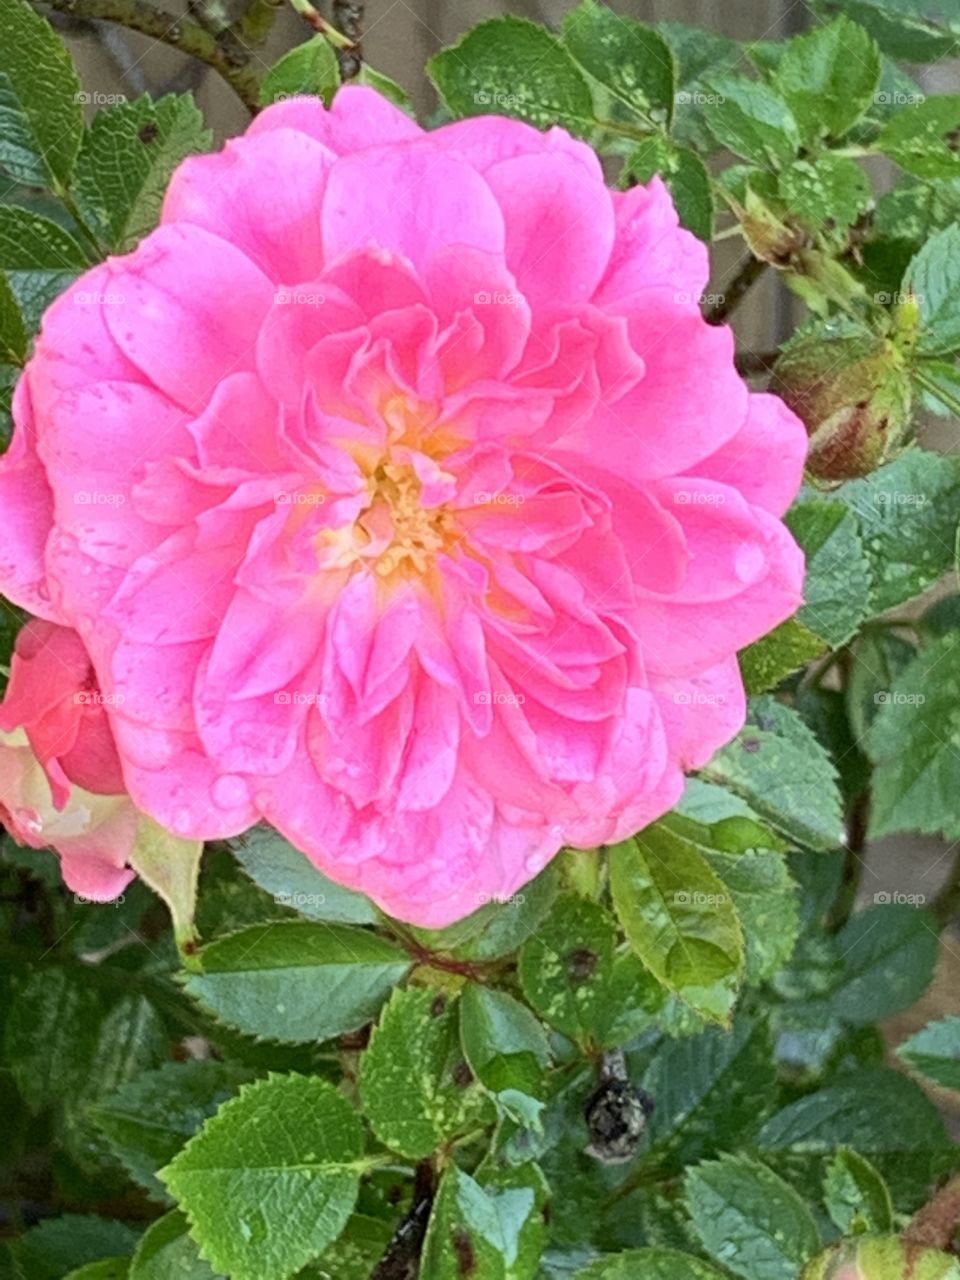 Pink rose